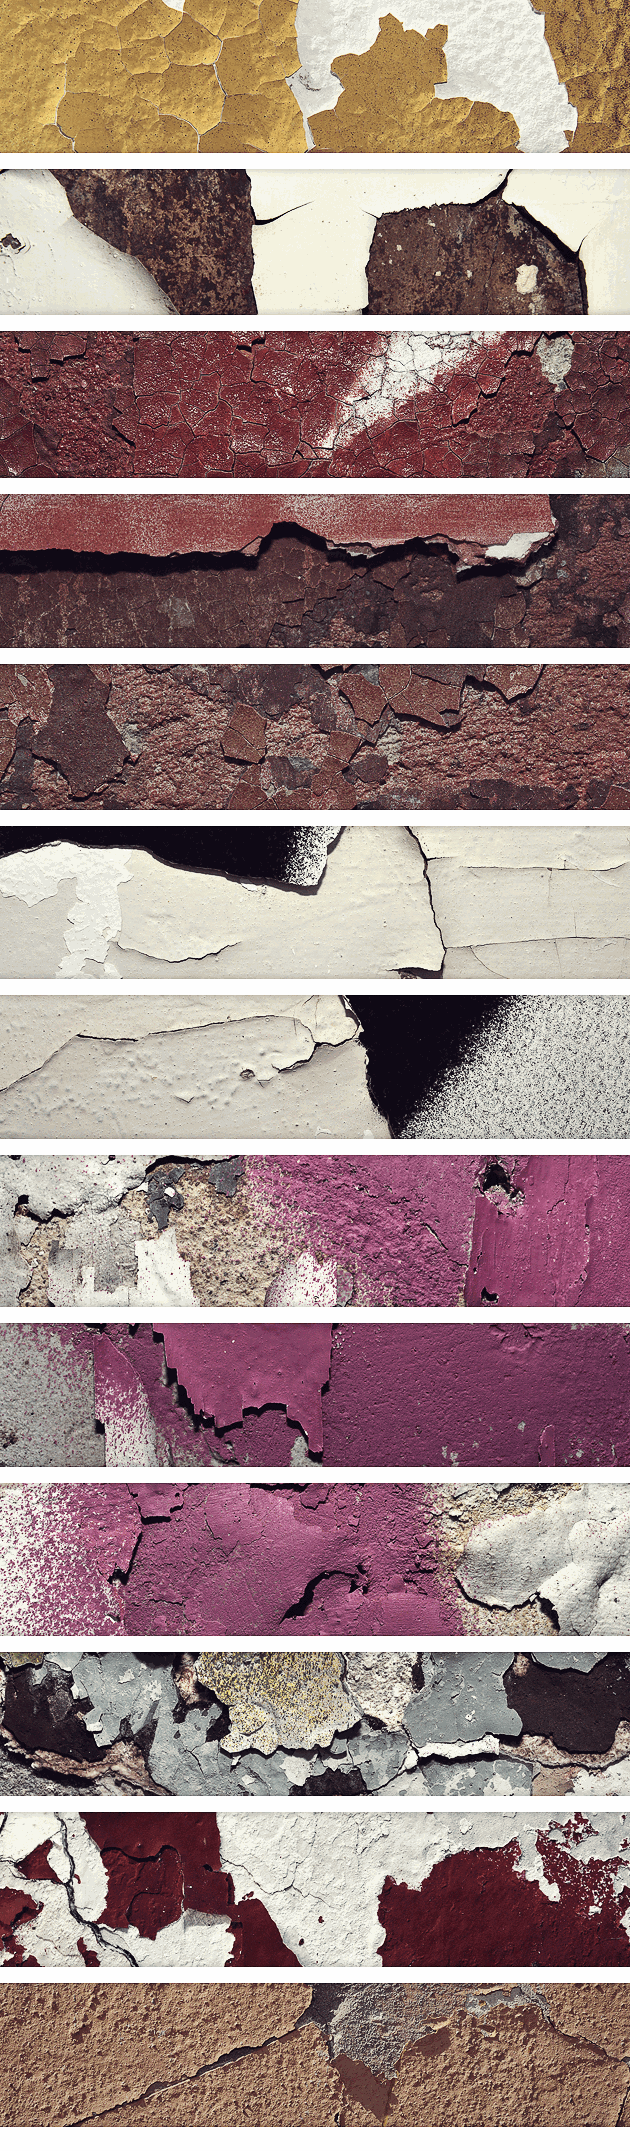 designtnt-textures-chipped-paint-concrete-large